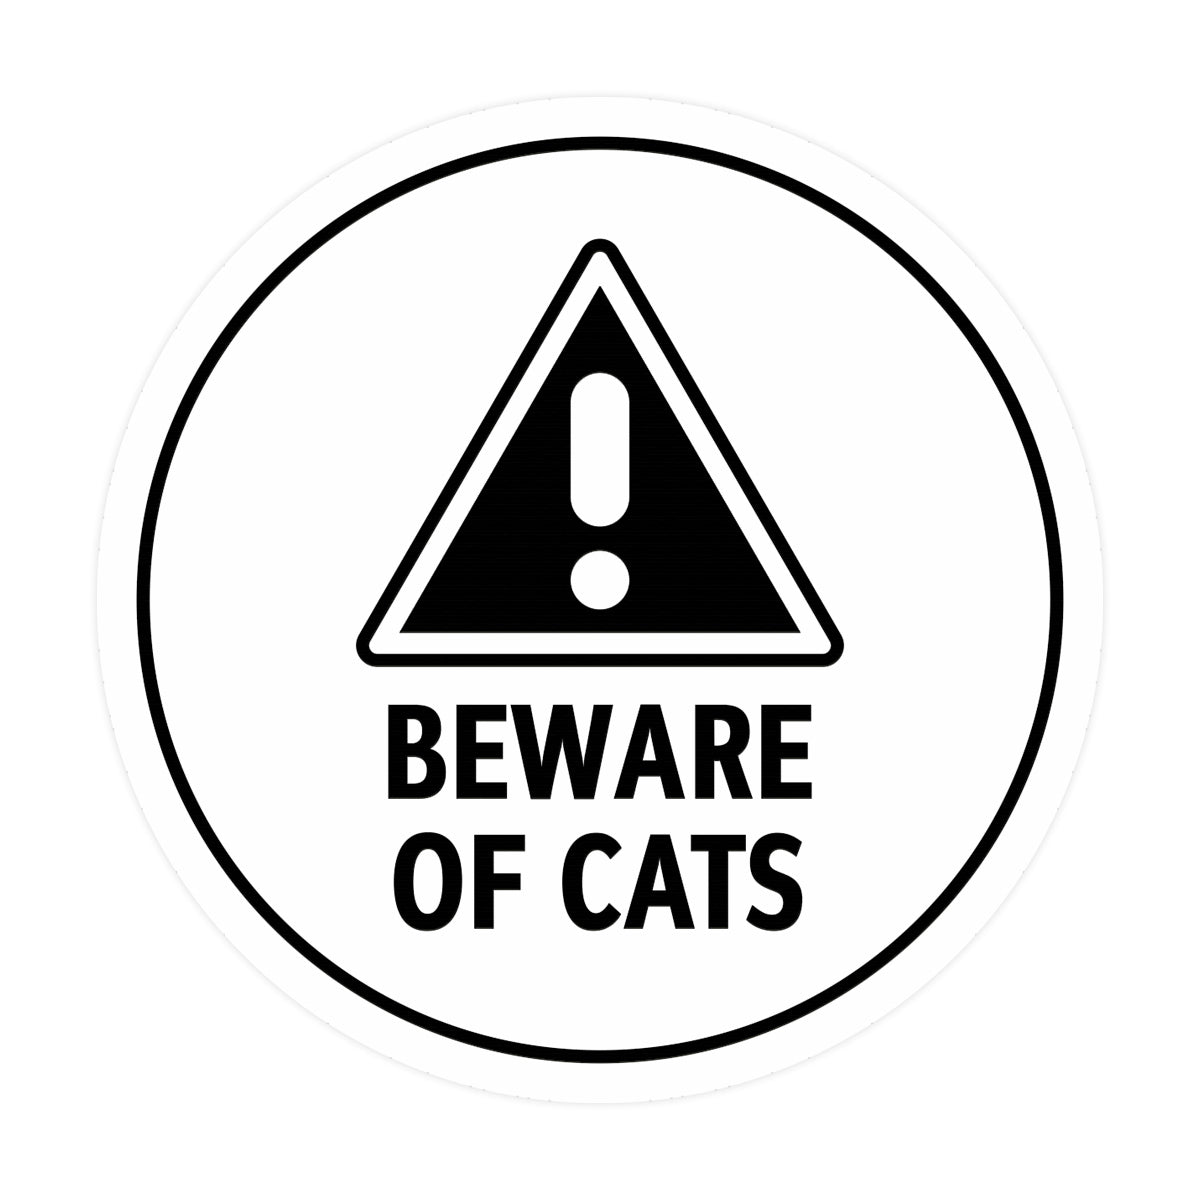 Motto Lita Circle Beware of Cats Wall or Door Sign